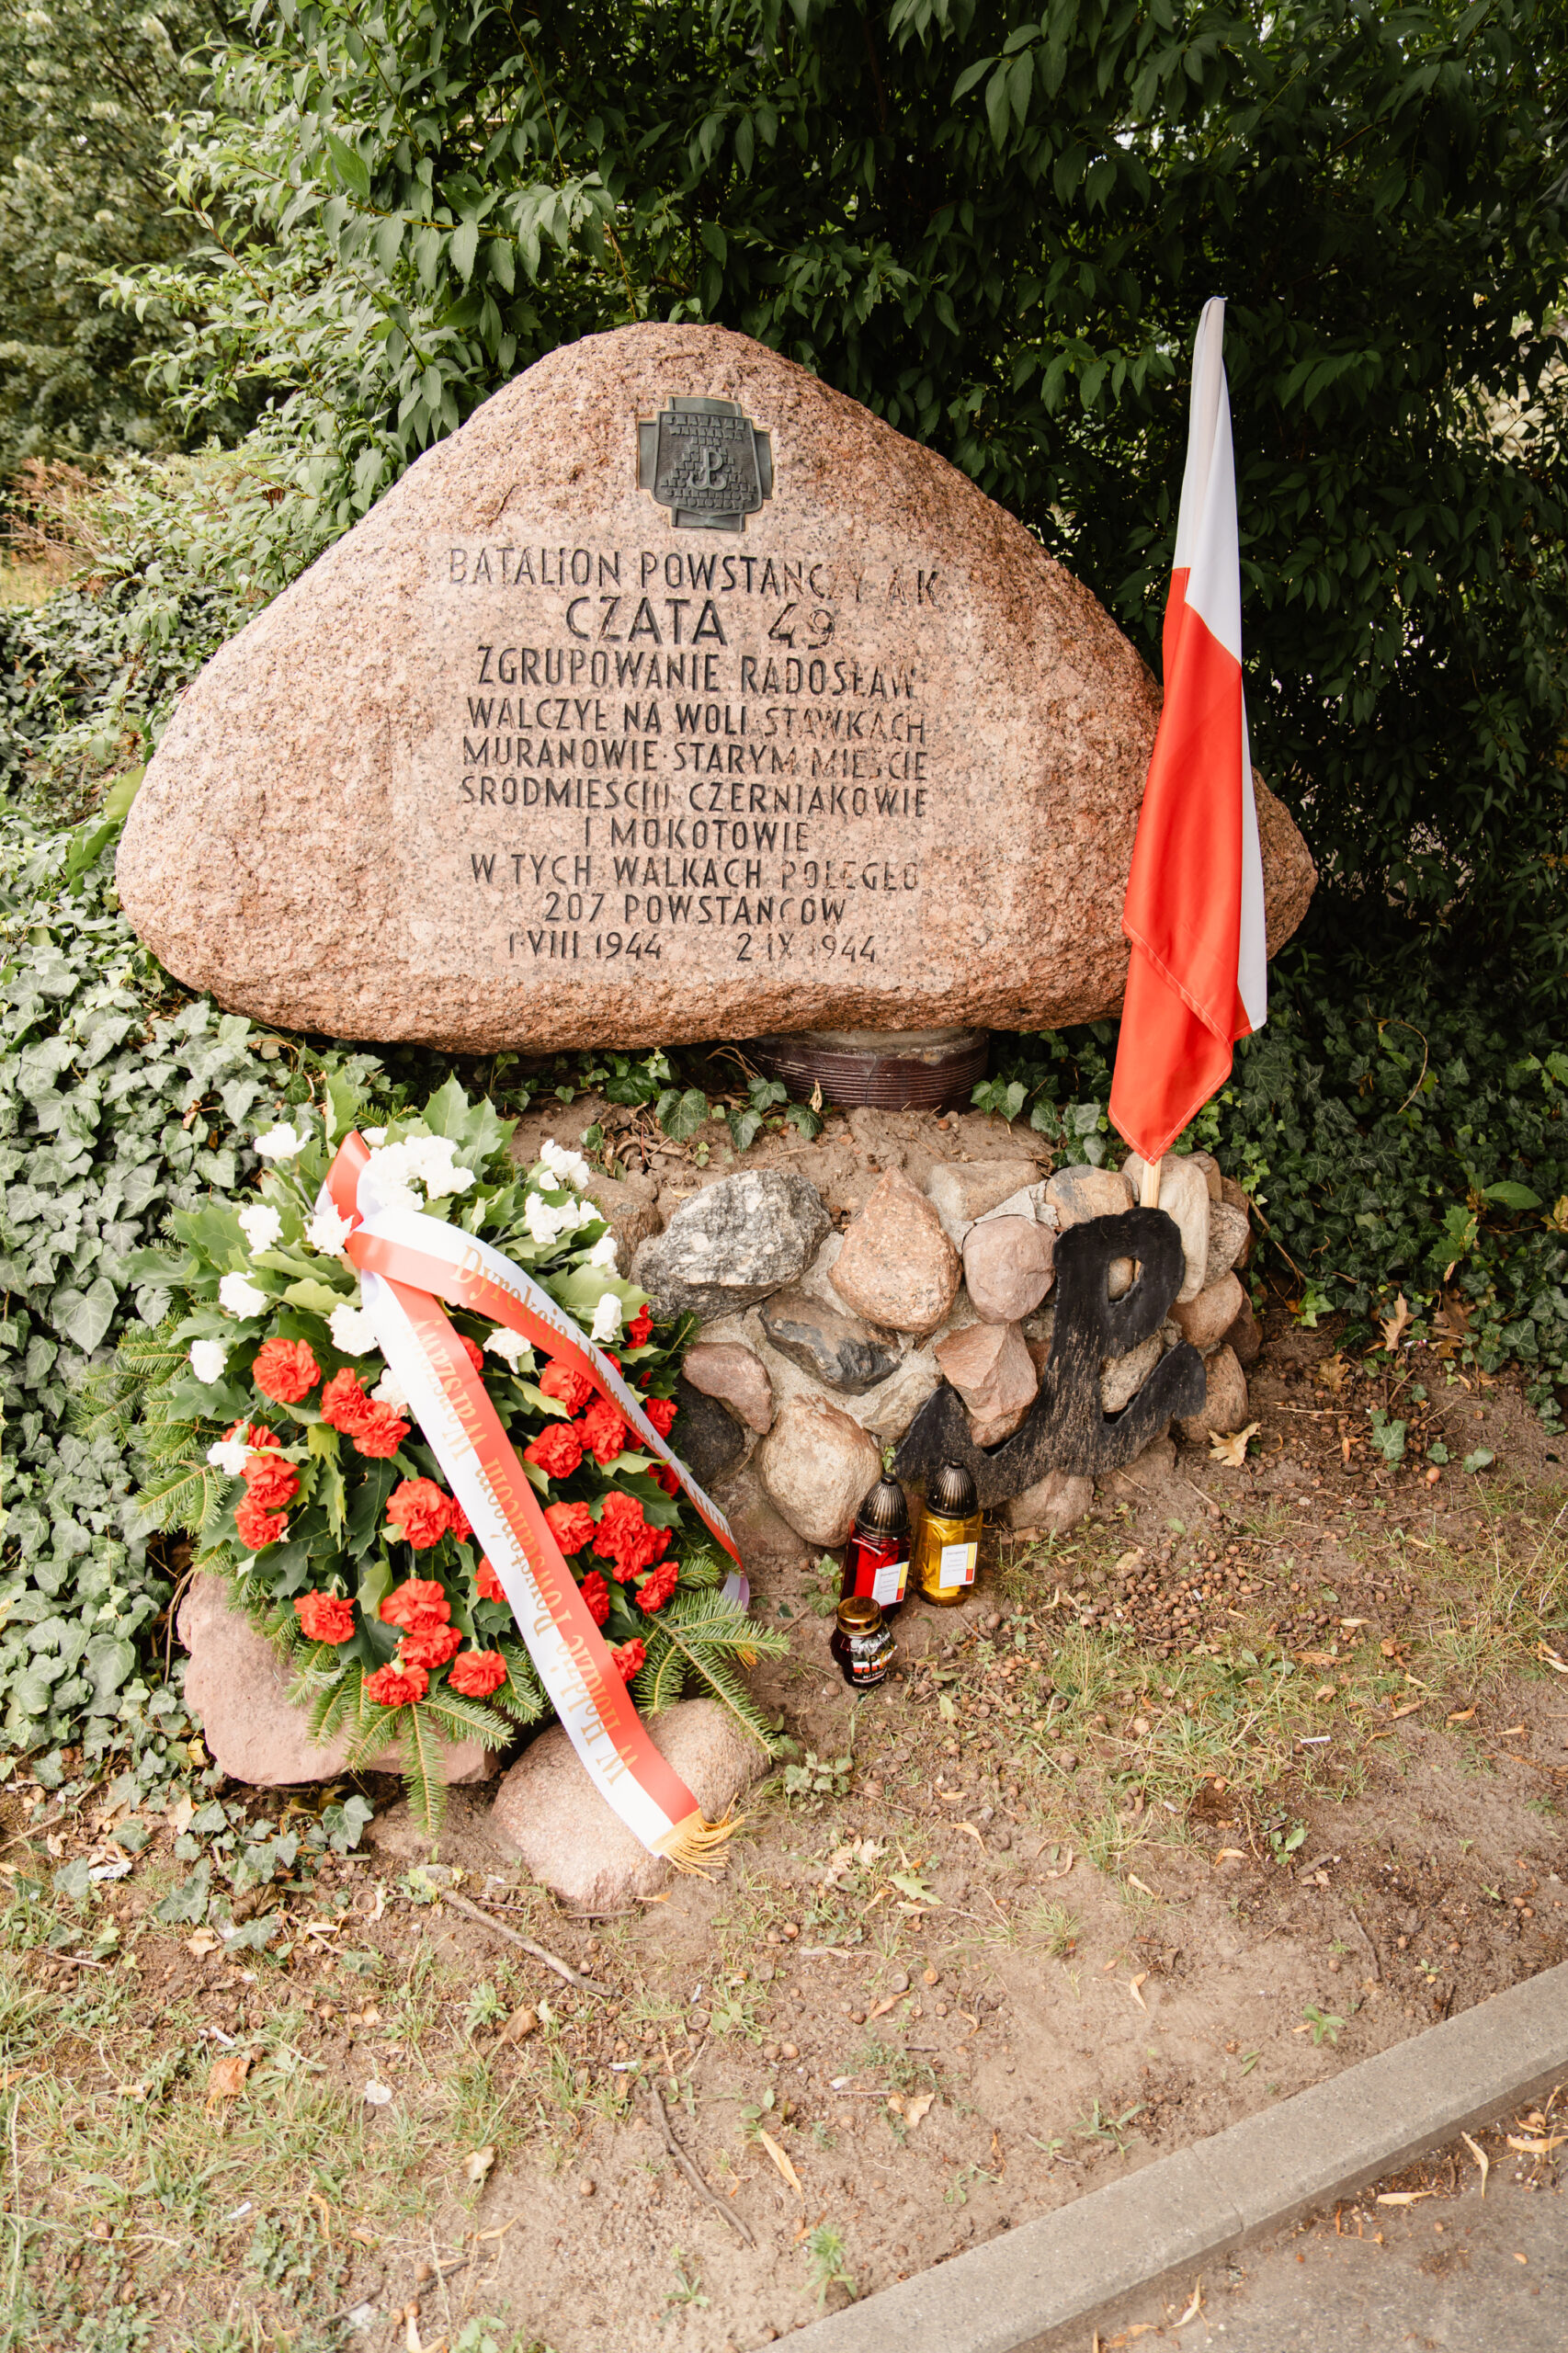 2.	Pomnik Batalionu Powstańczego AK Czata 49 Zgrupowanie Radosław